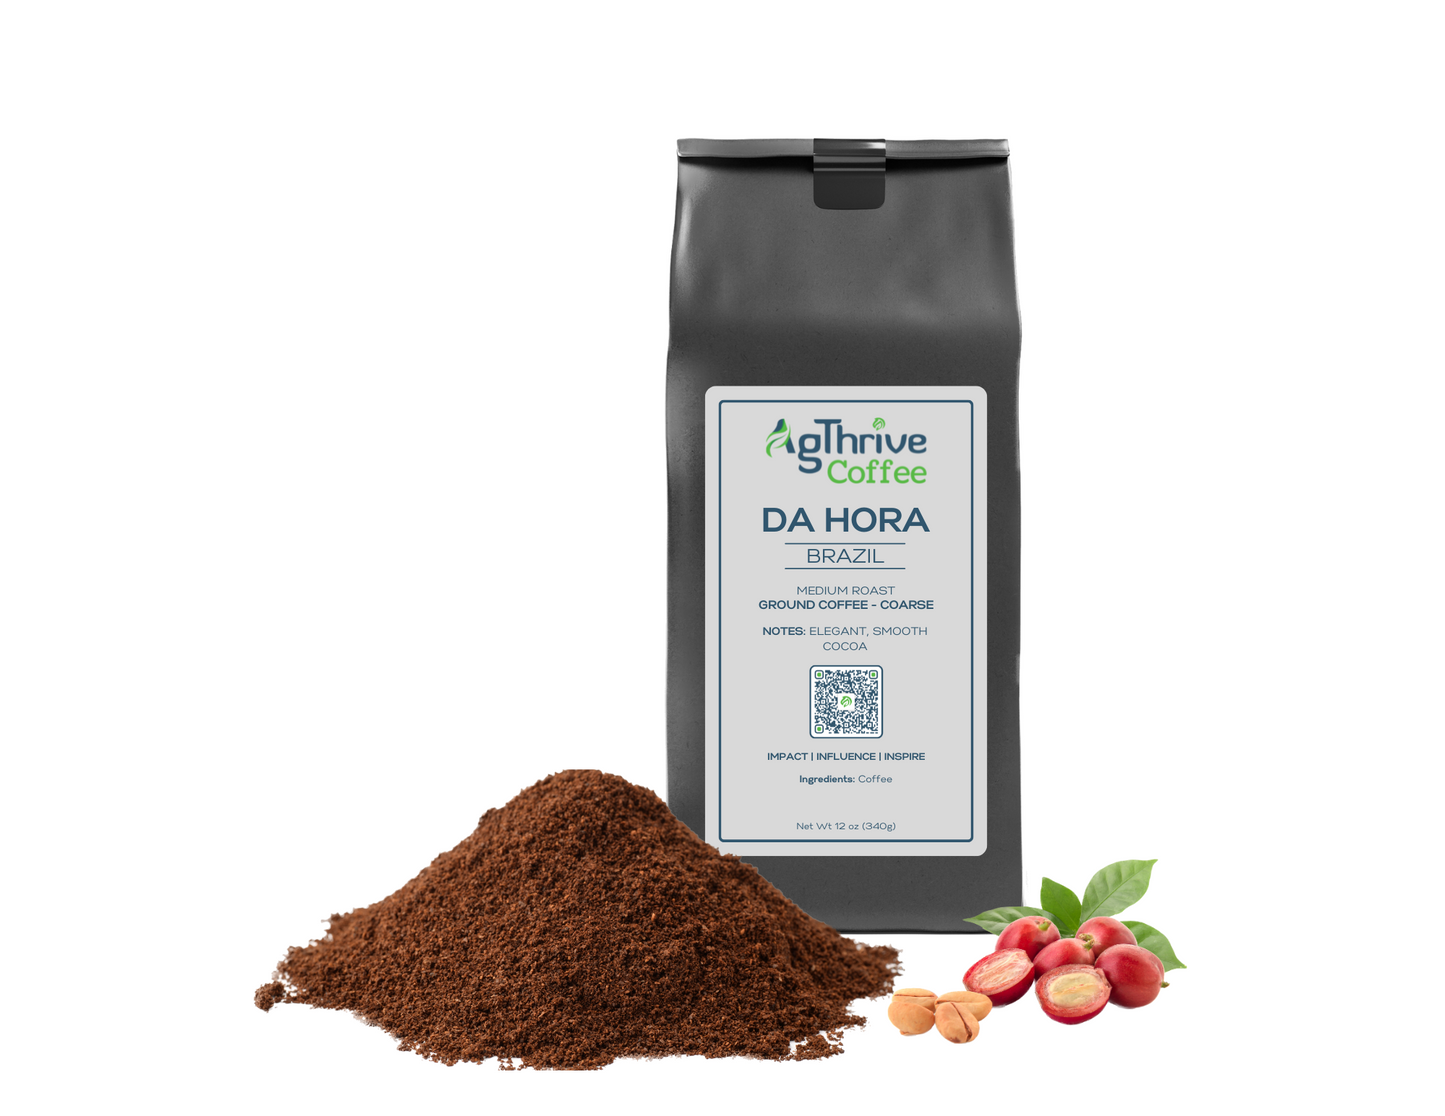 DA HORA - Exquisite Brazilian Single Origin Coffee Coarse